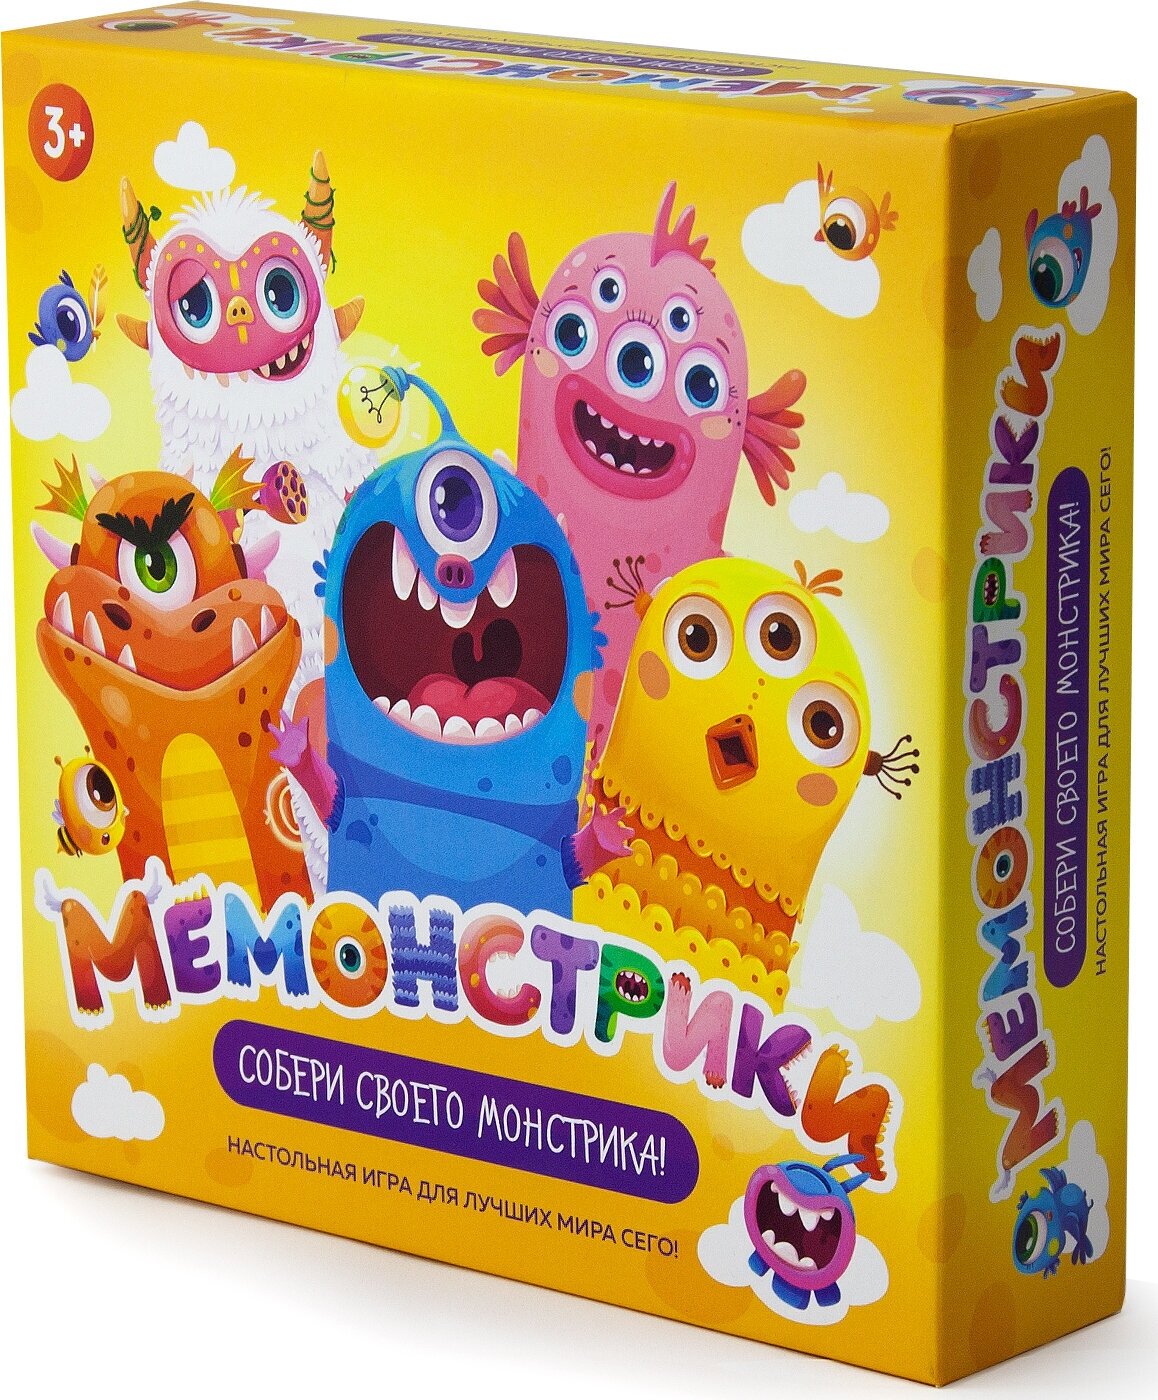 Мемонстрики / Мемо игра настольная развивающая подарок для детей про монстриков / ND Play Tema Brew. Для самых маленьких 3+. (15,5 х 15,5 х 4 см), автор Юрий Гурин